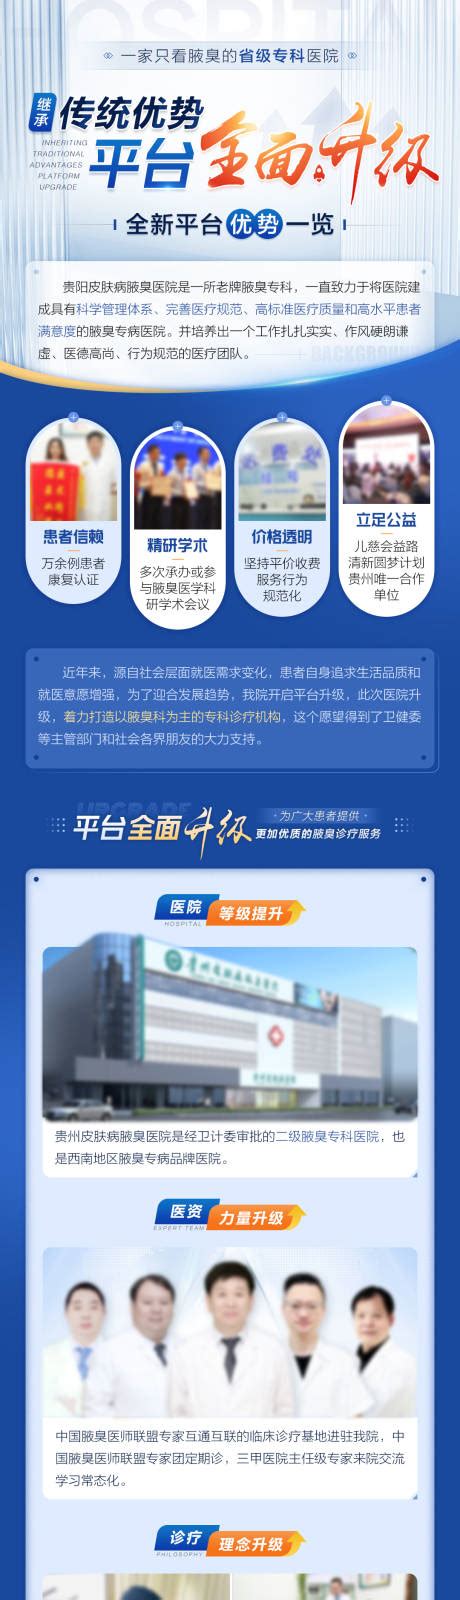 专科医院4大优势介绍大楼海报PSD广告设计素材海报模板免费下载-享设计